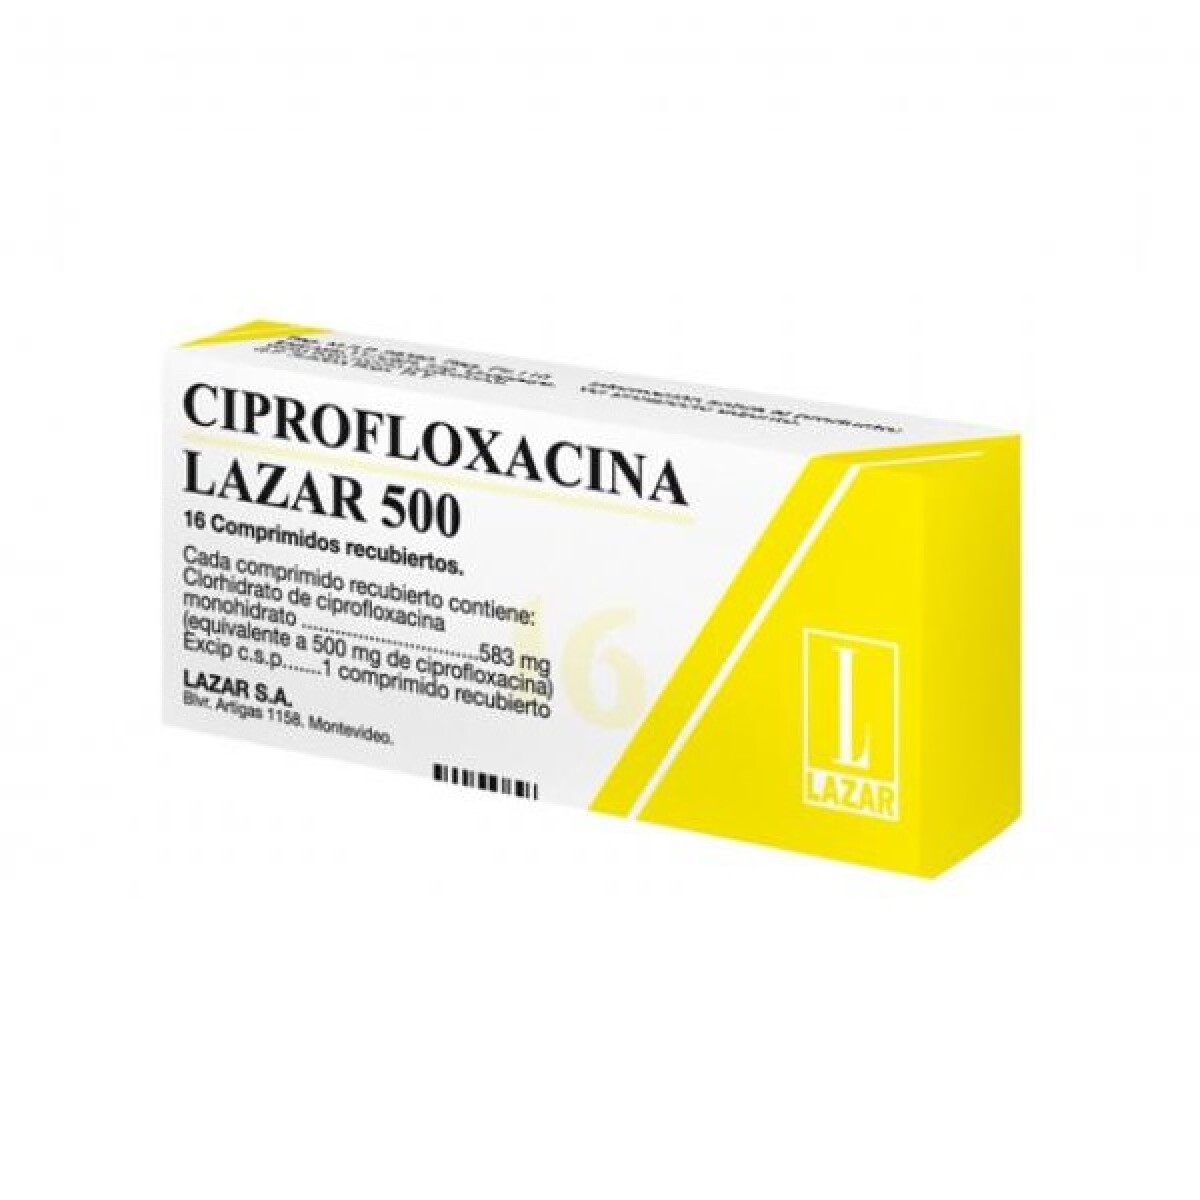 Ciprofloxacina Lazar 500 16 Comp. 